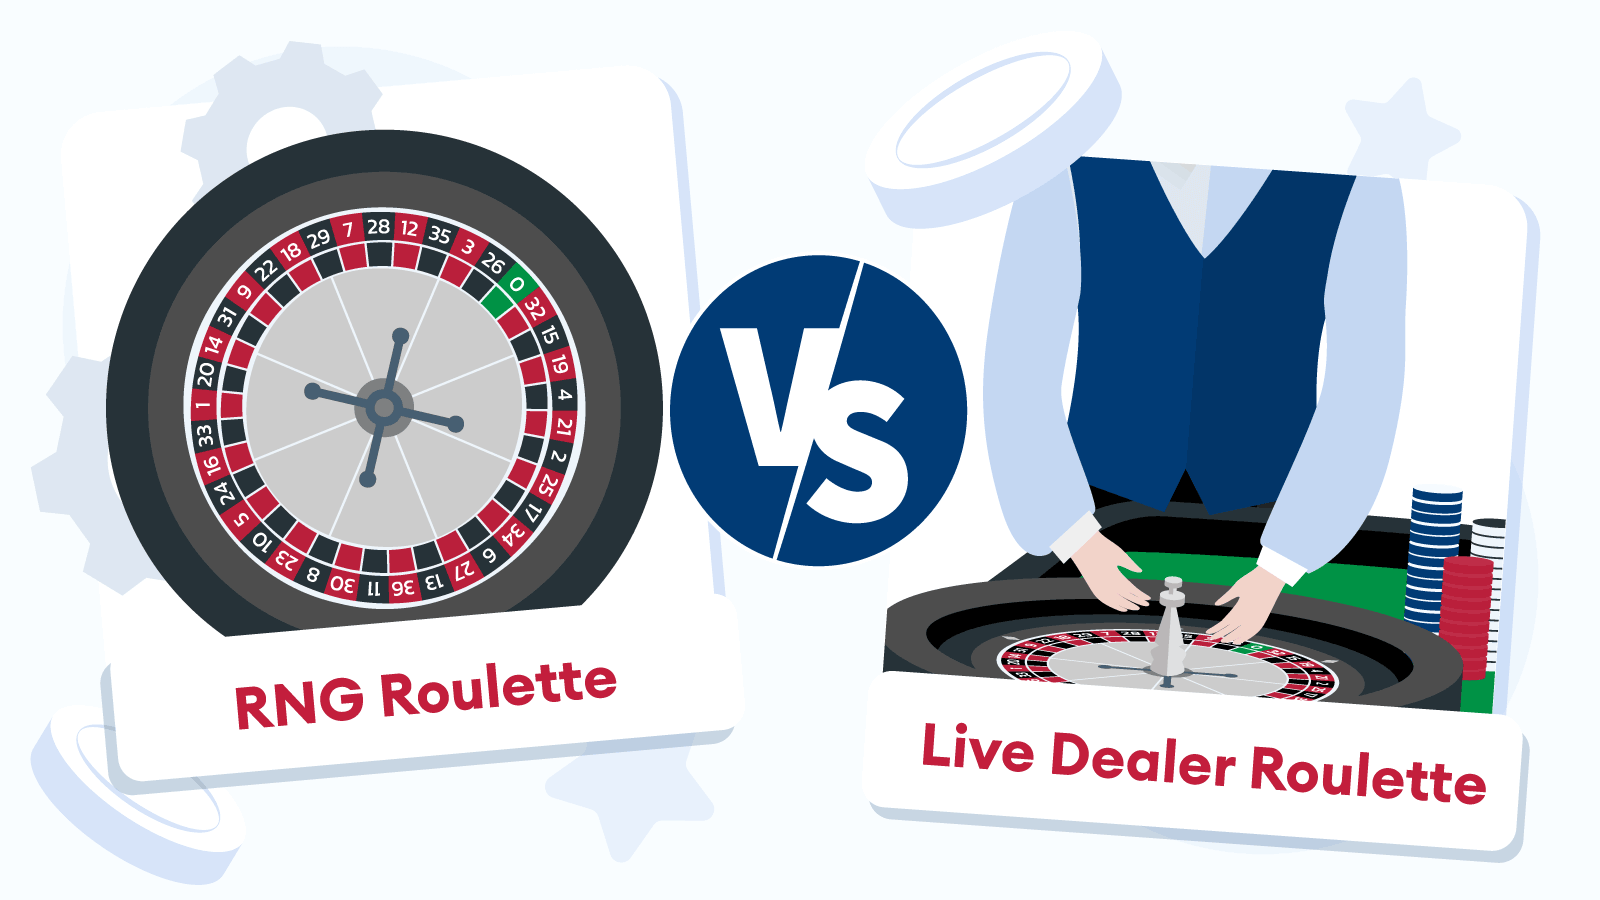 RNG Roulette Games vs Live Dealer Roulette